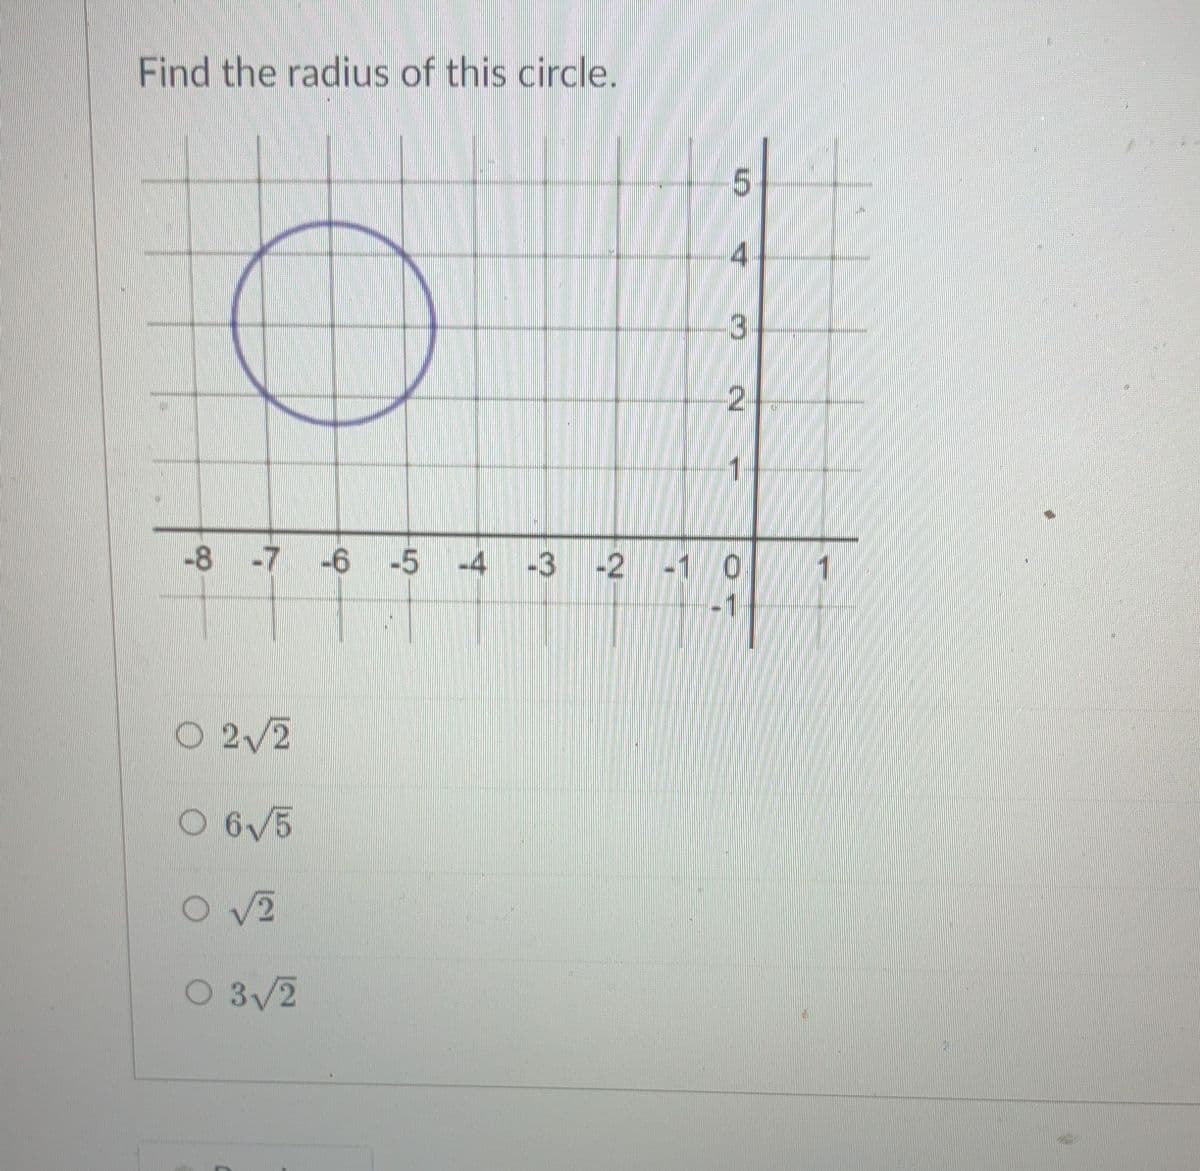 Find the radius of this circle.
O 2√2
O 6√5
-8 -7 -6 -5 -4 -3 -2 -1 0
O√2
5
O 3√2
3
2